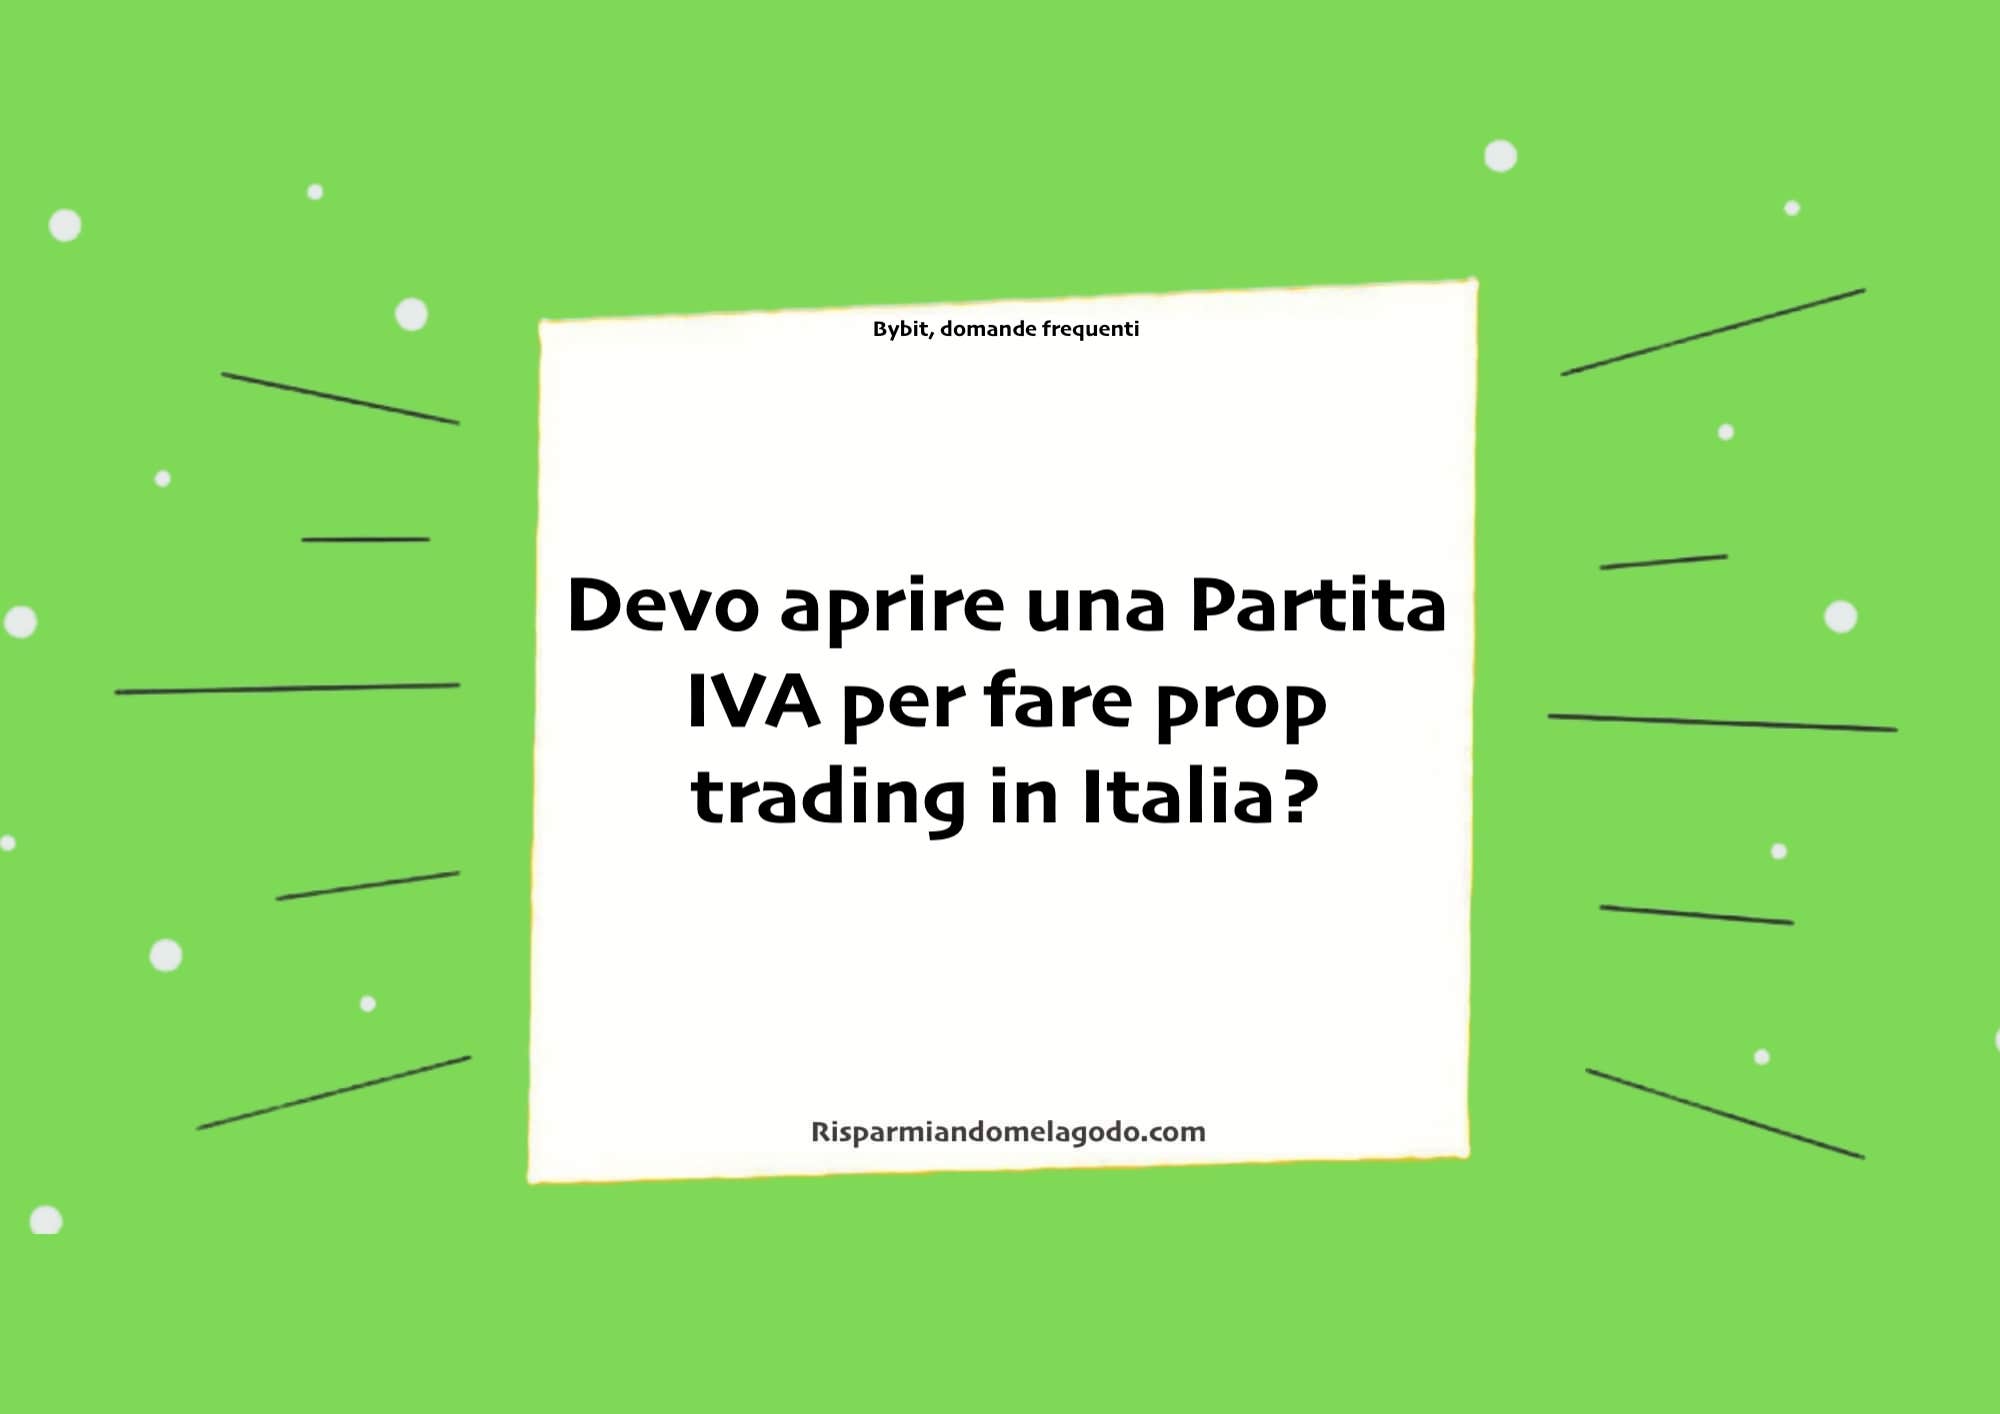 Devo aprire una Partita IVA per fare prop trading in Italia?